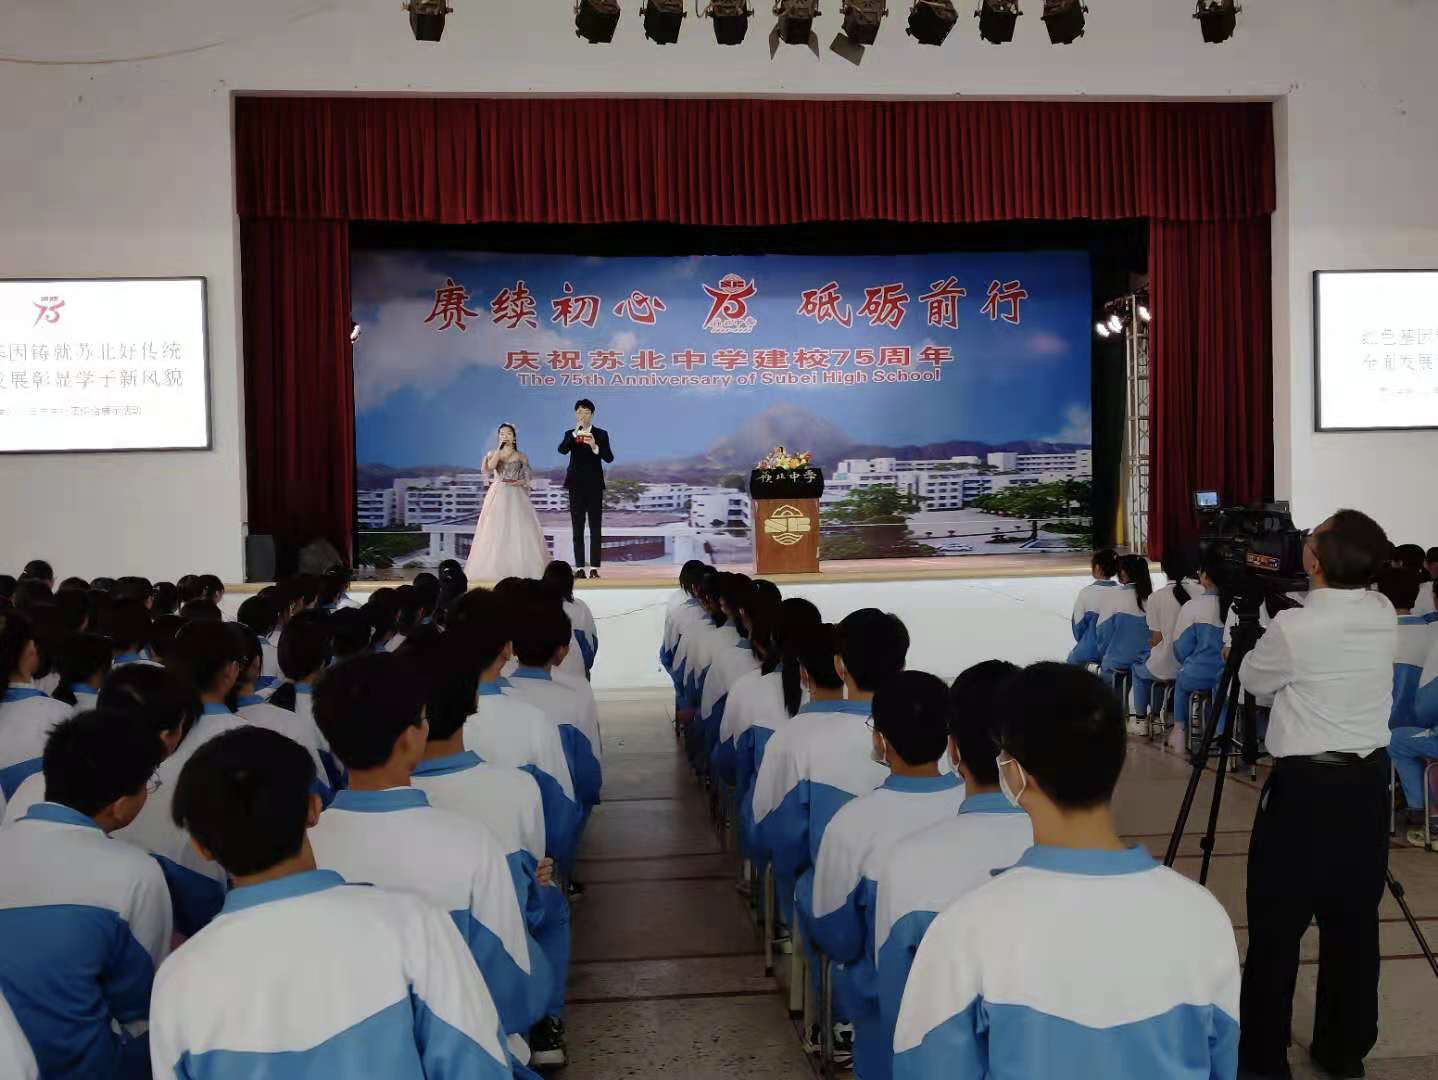 汕头市澄海区苏北中学以庆祝建党百年为契机,深入开展传承红色基因